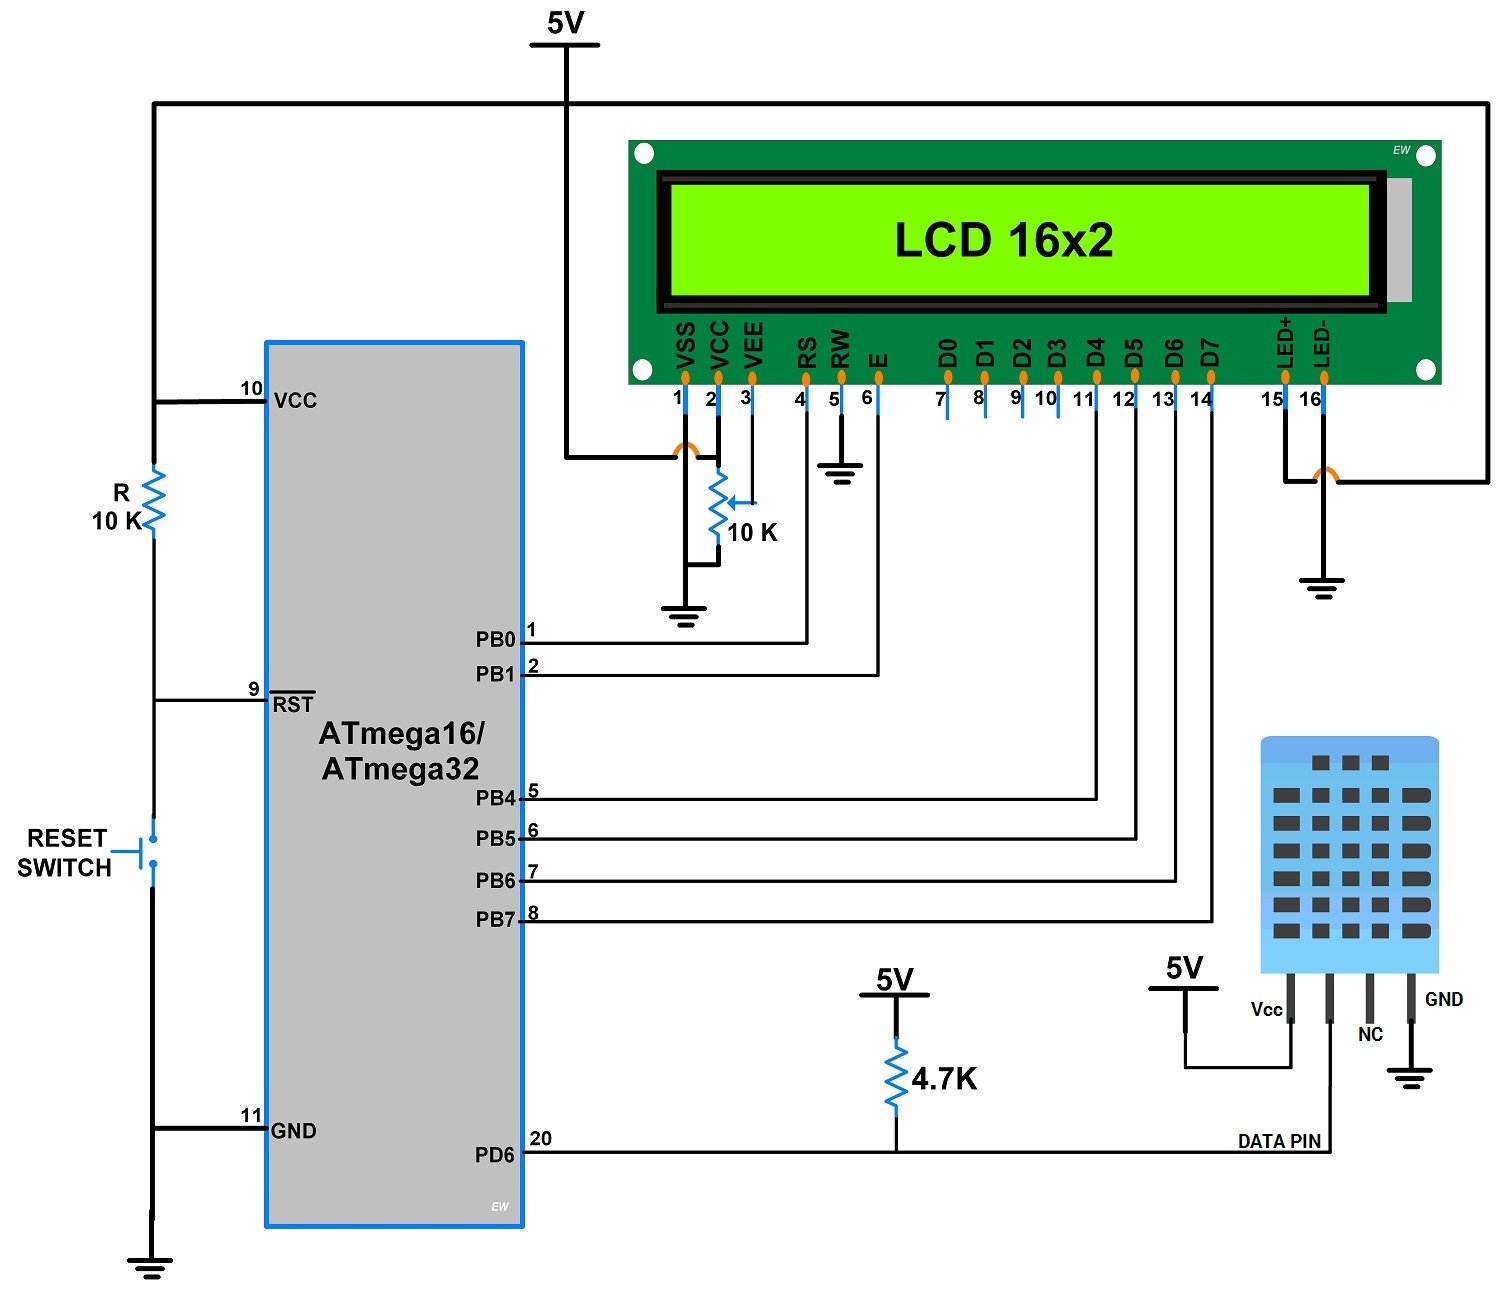 Dht11 подключение к ардуино и вывод на lcd 1602 i2c схема и скетч